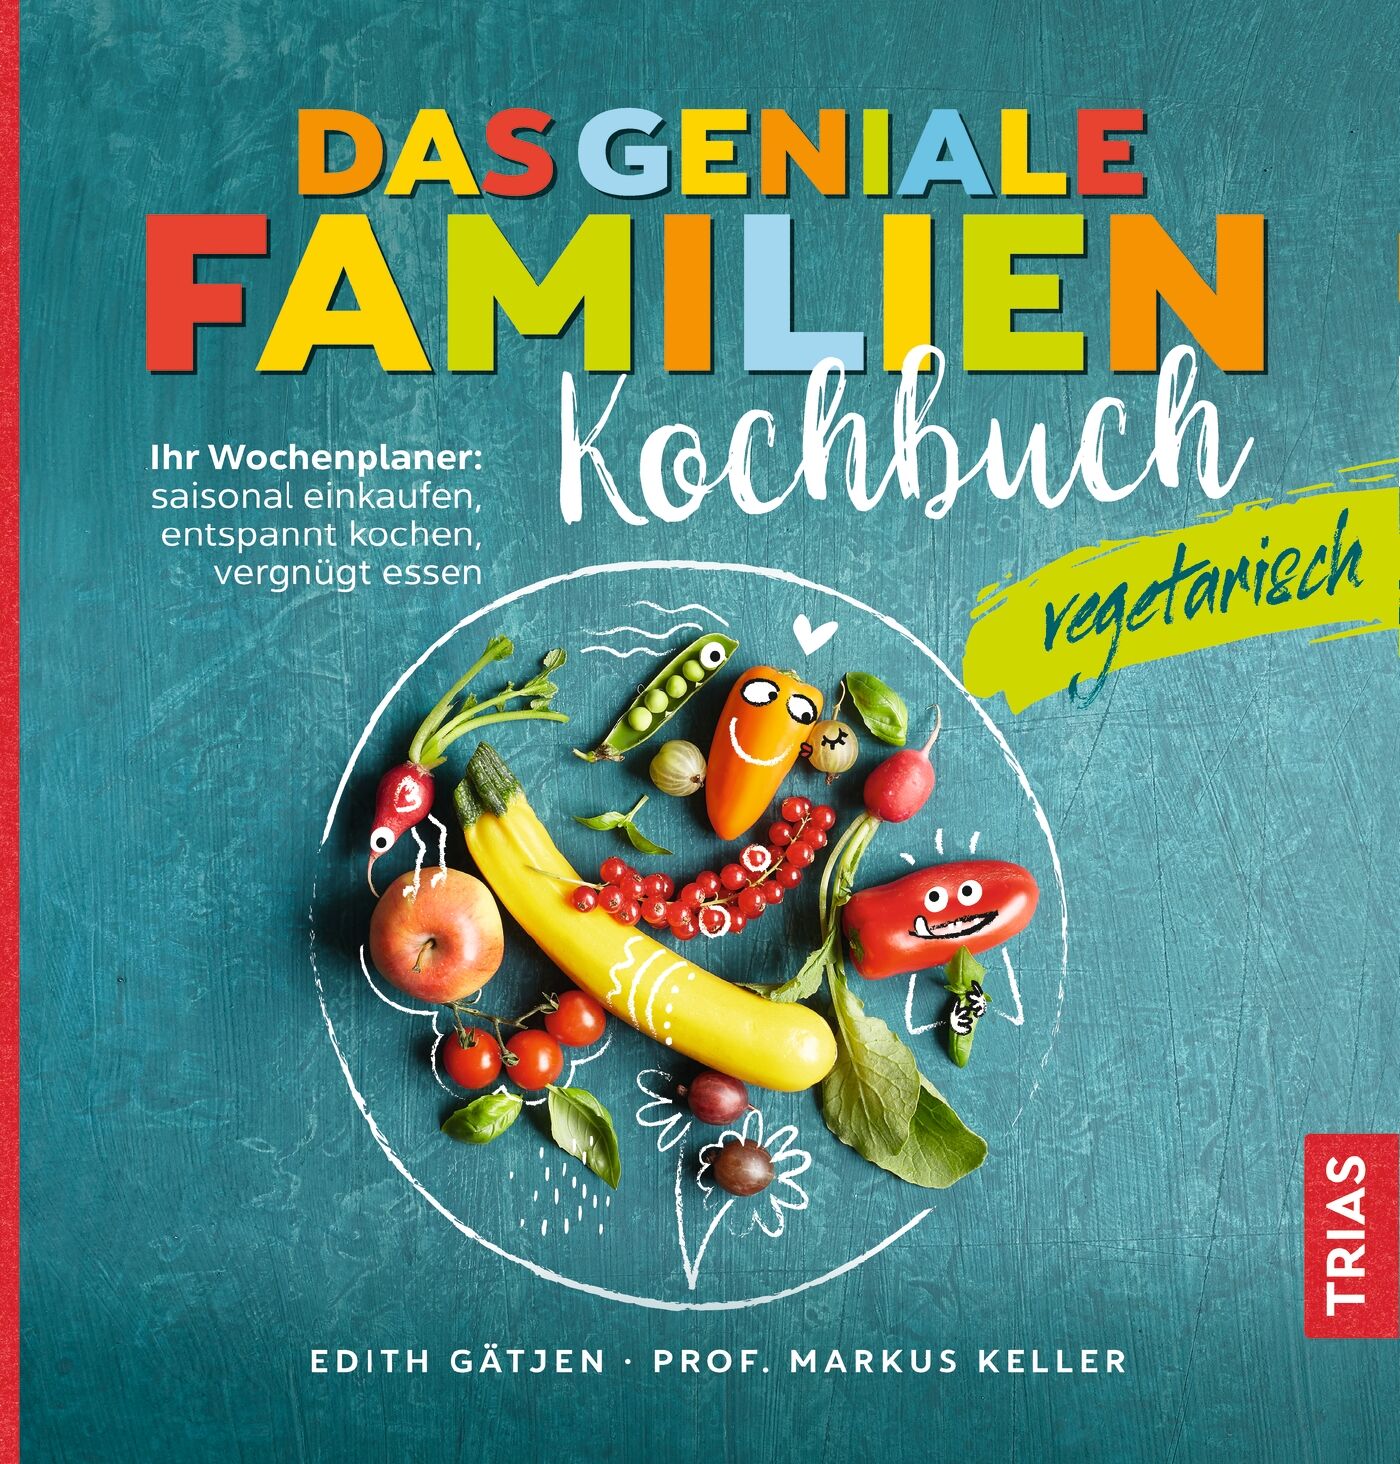 Das geniale Familienkochbuch vegetarisch, 9783432110899